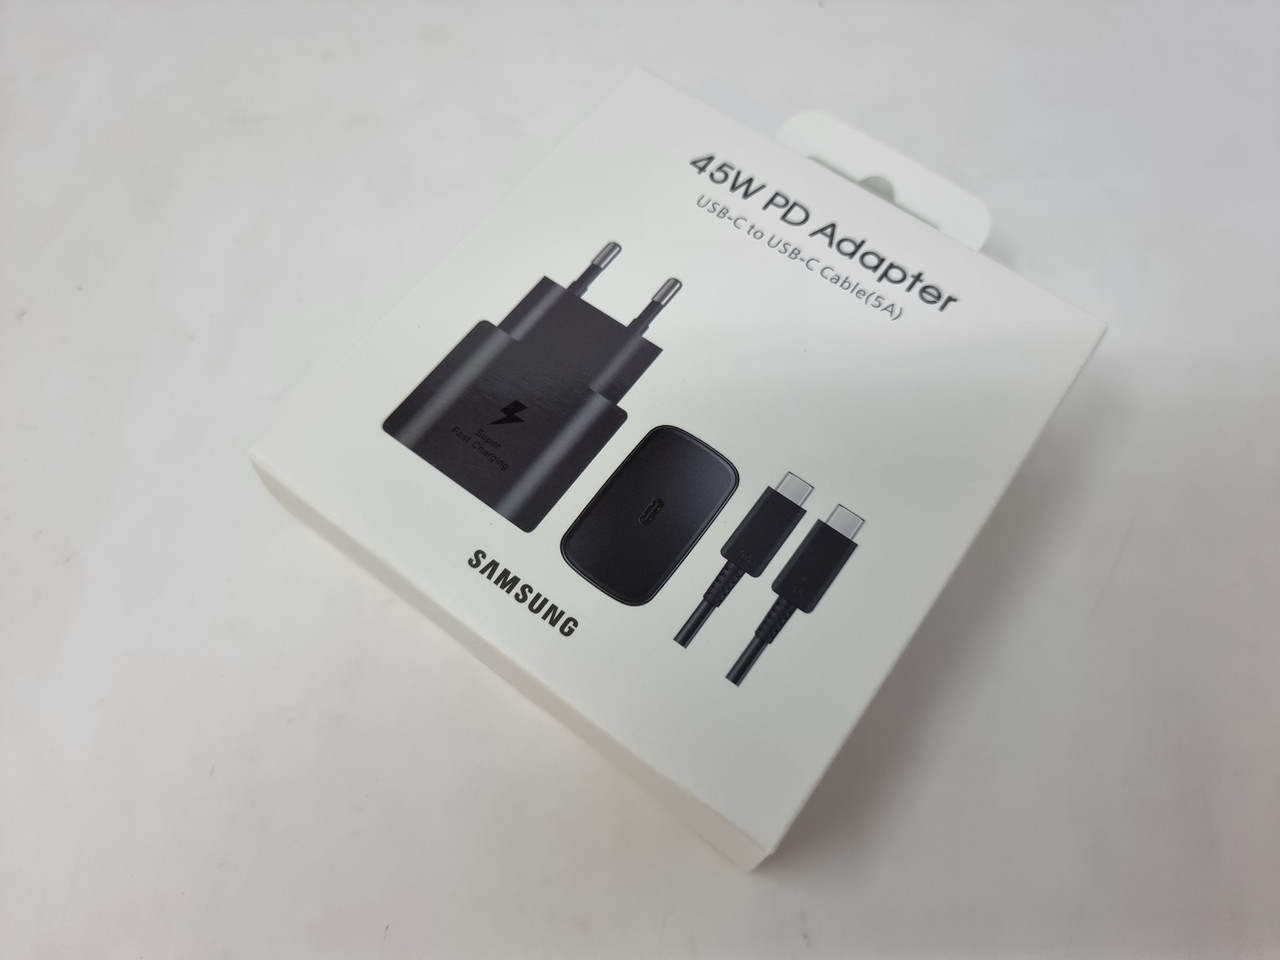 Samsung Chargeur Secteur rapide USB-C 45W + câble USB-C - Noir -  EP-T4510XBE - Packaging Original - Univertel